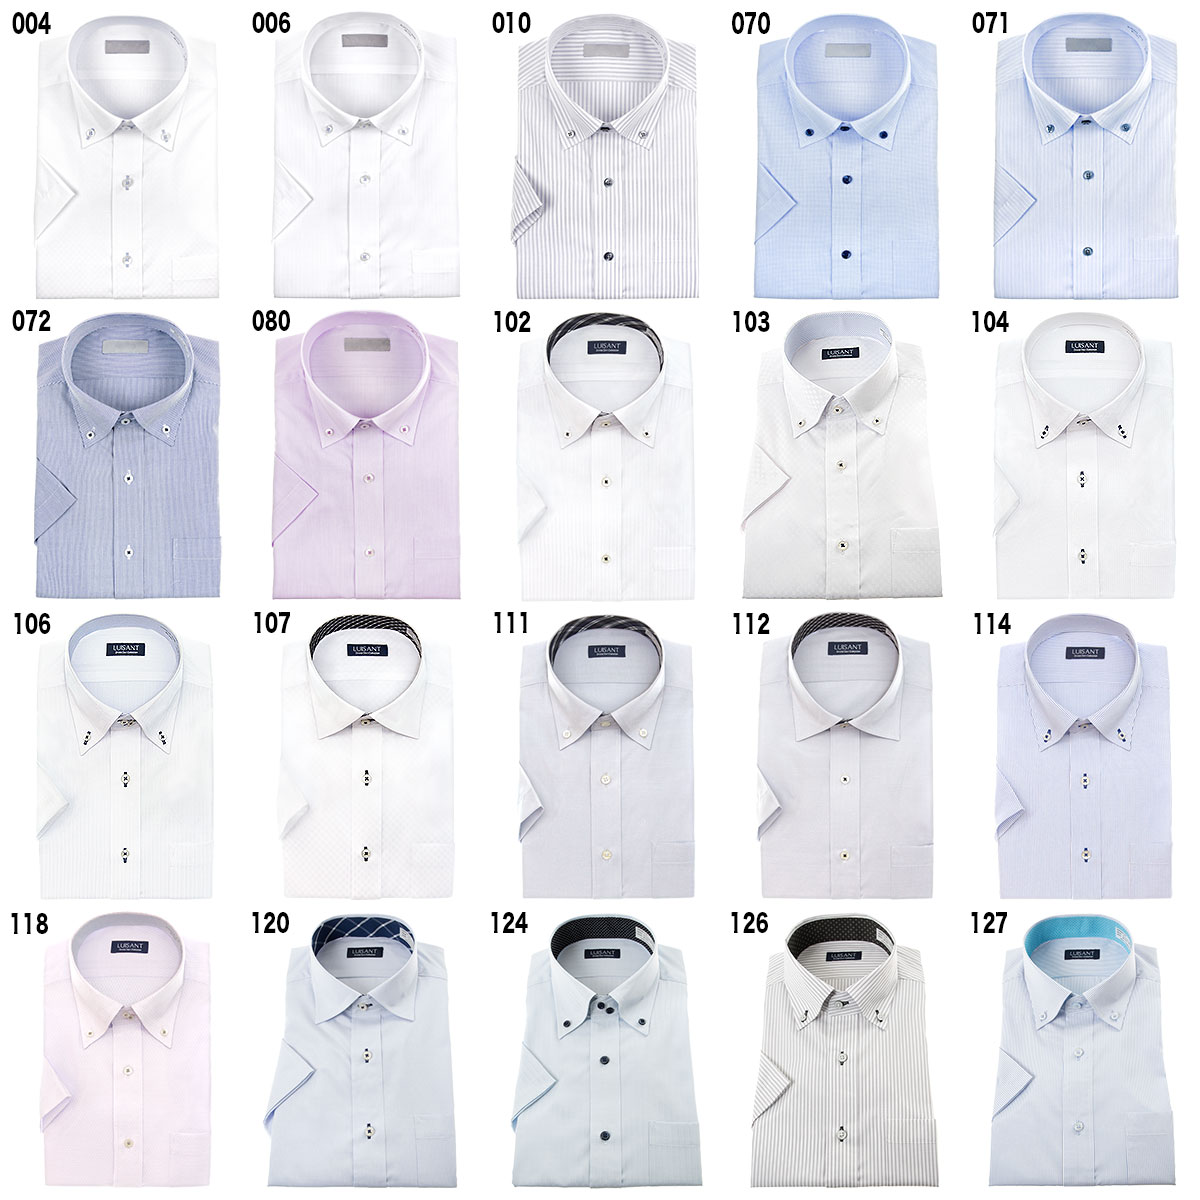 ワイシャツ 半袖 スリム 形態安定 ［よりどり5枚セット/よりどり3枚セット/単品購入OK］